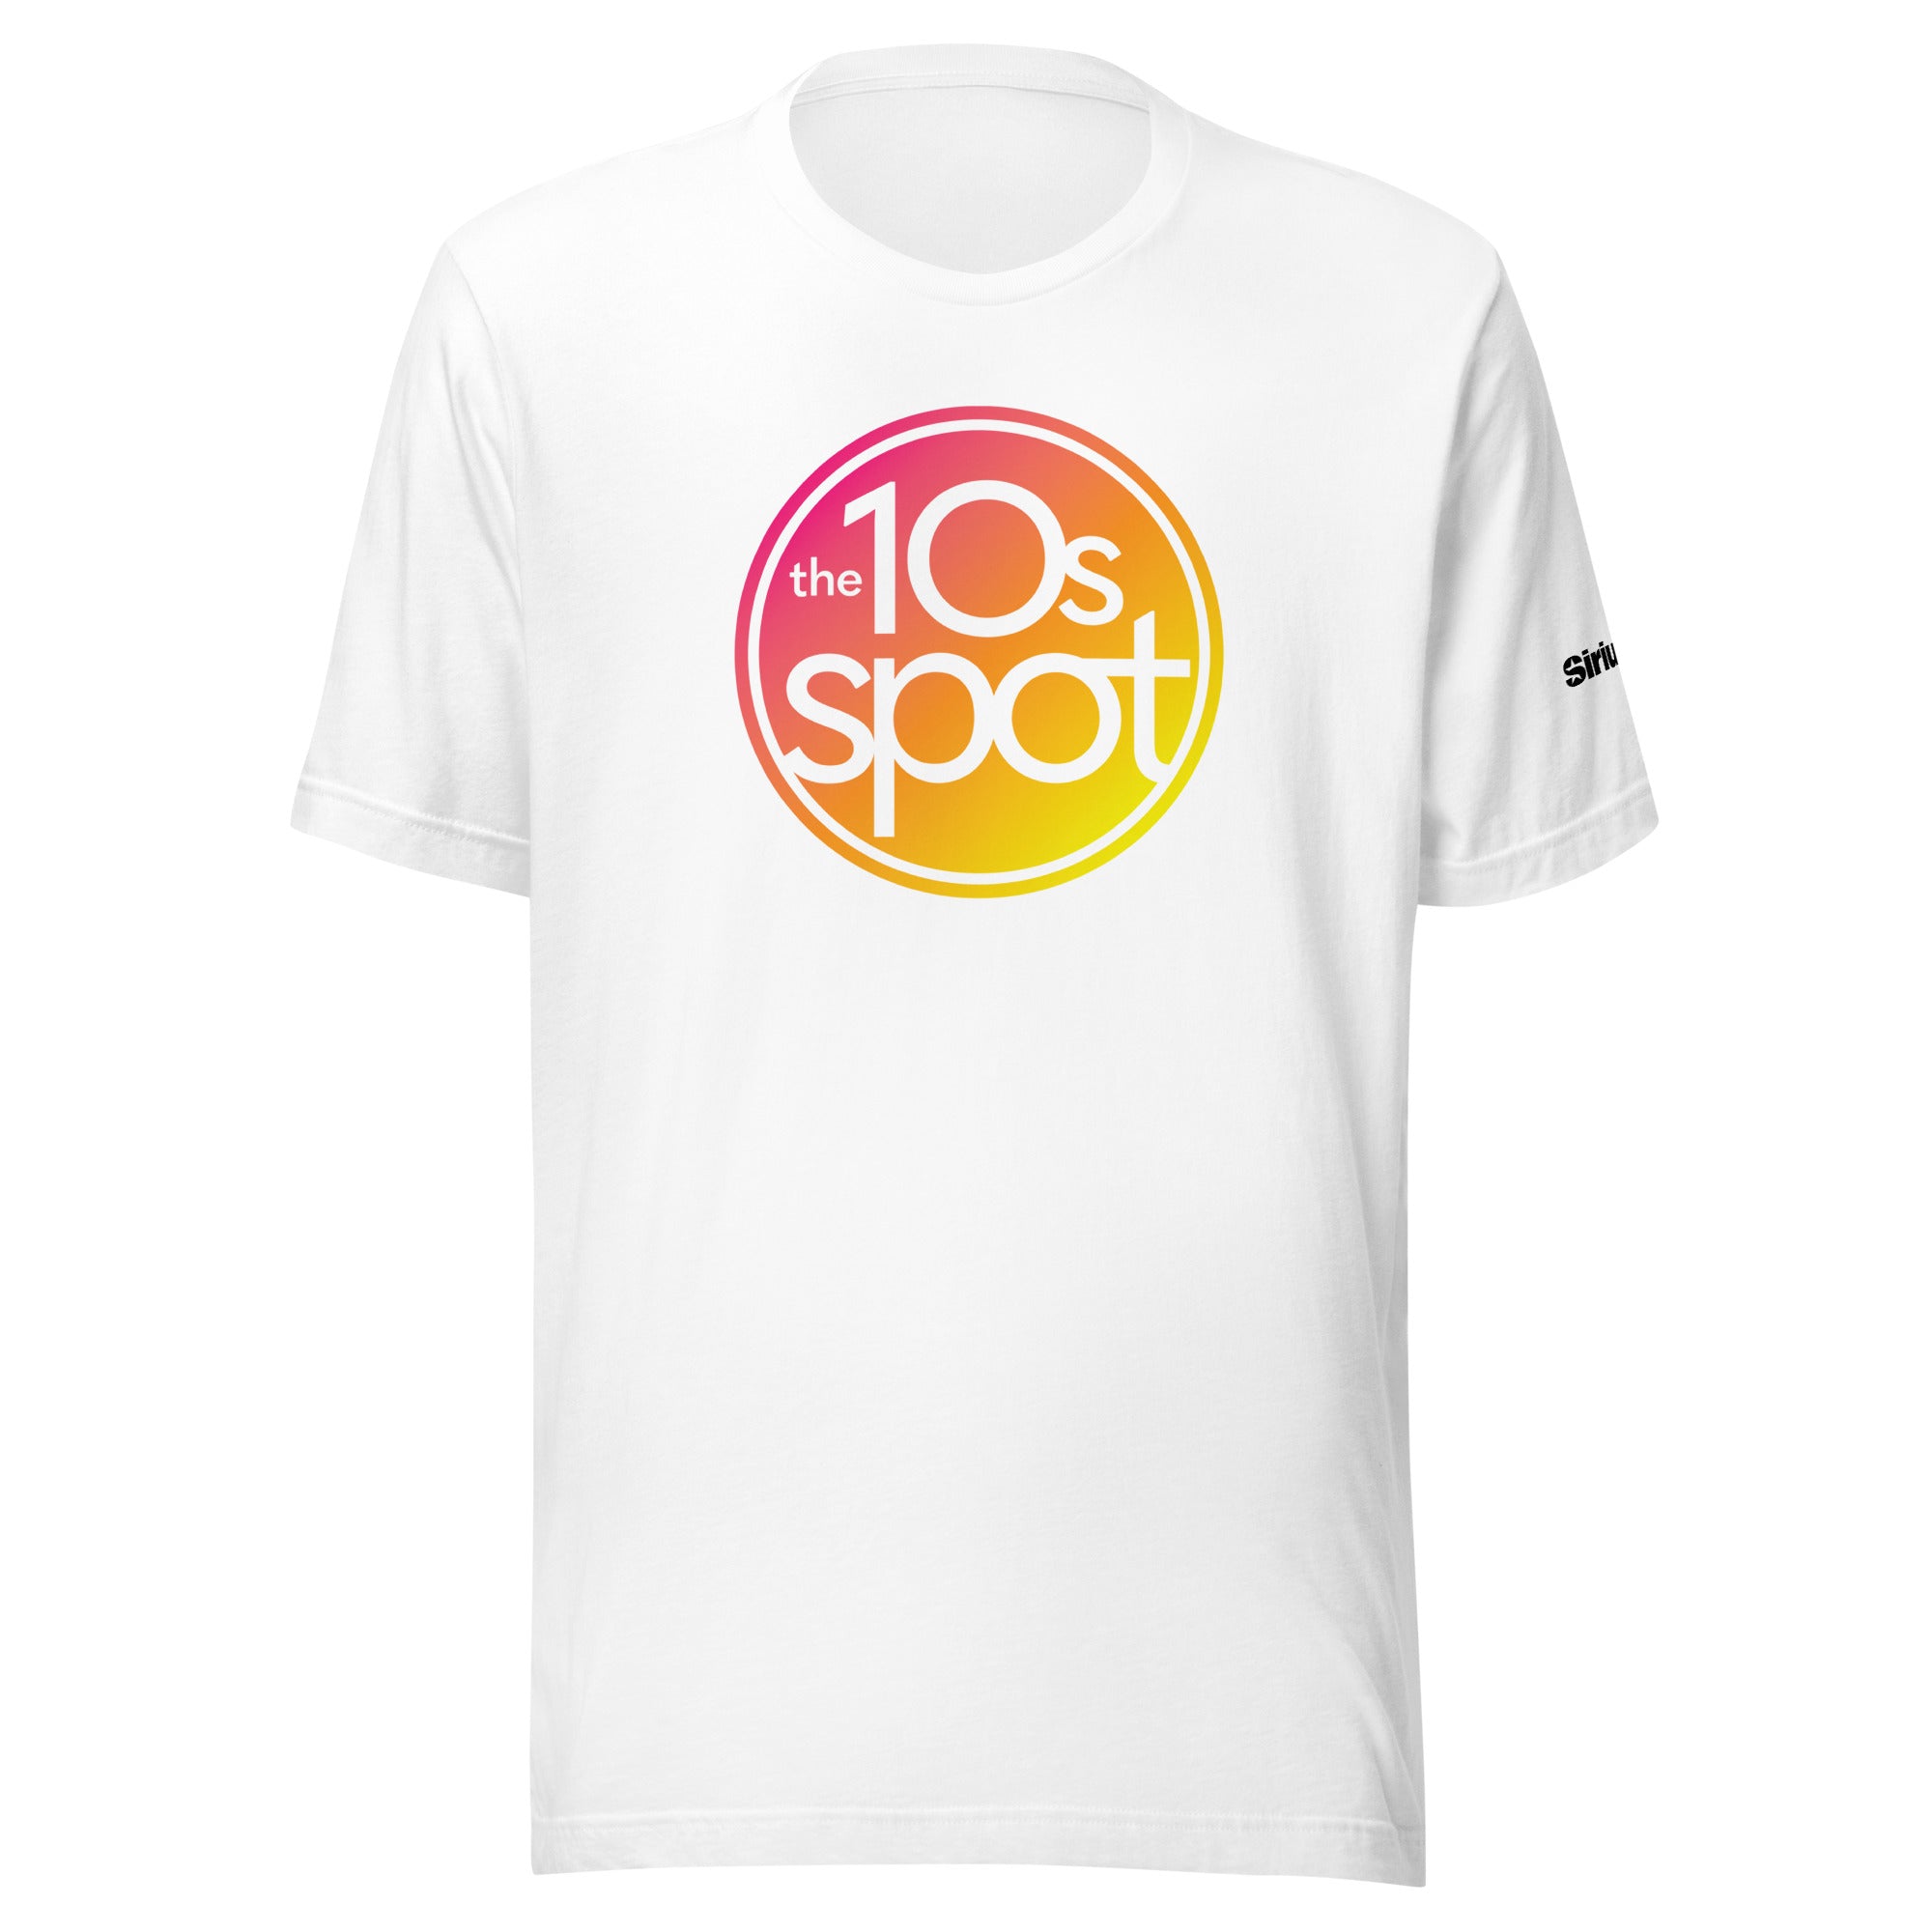 The 10s Spot: T-shirt (White)